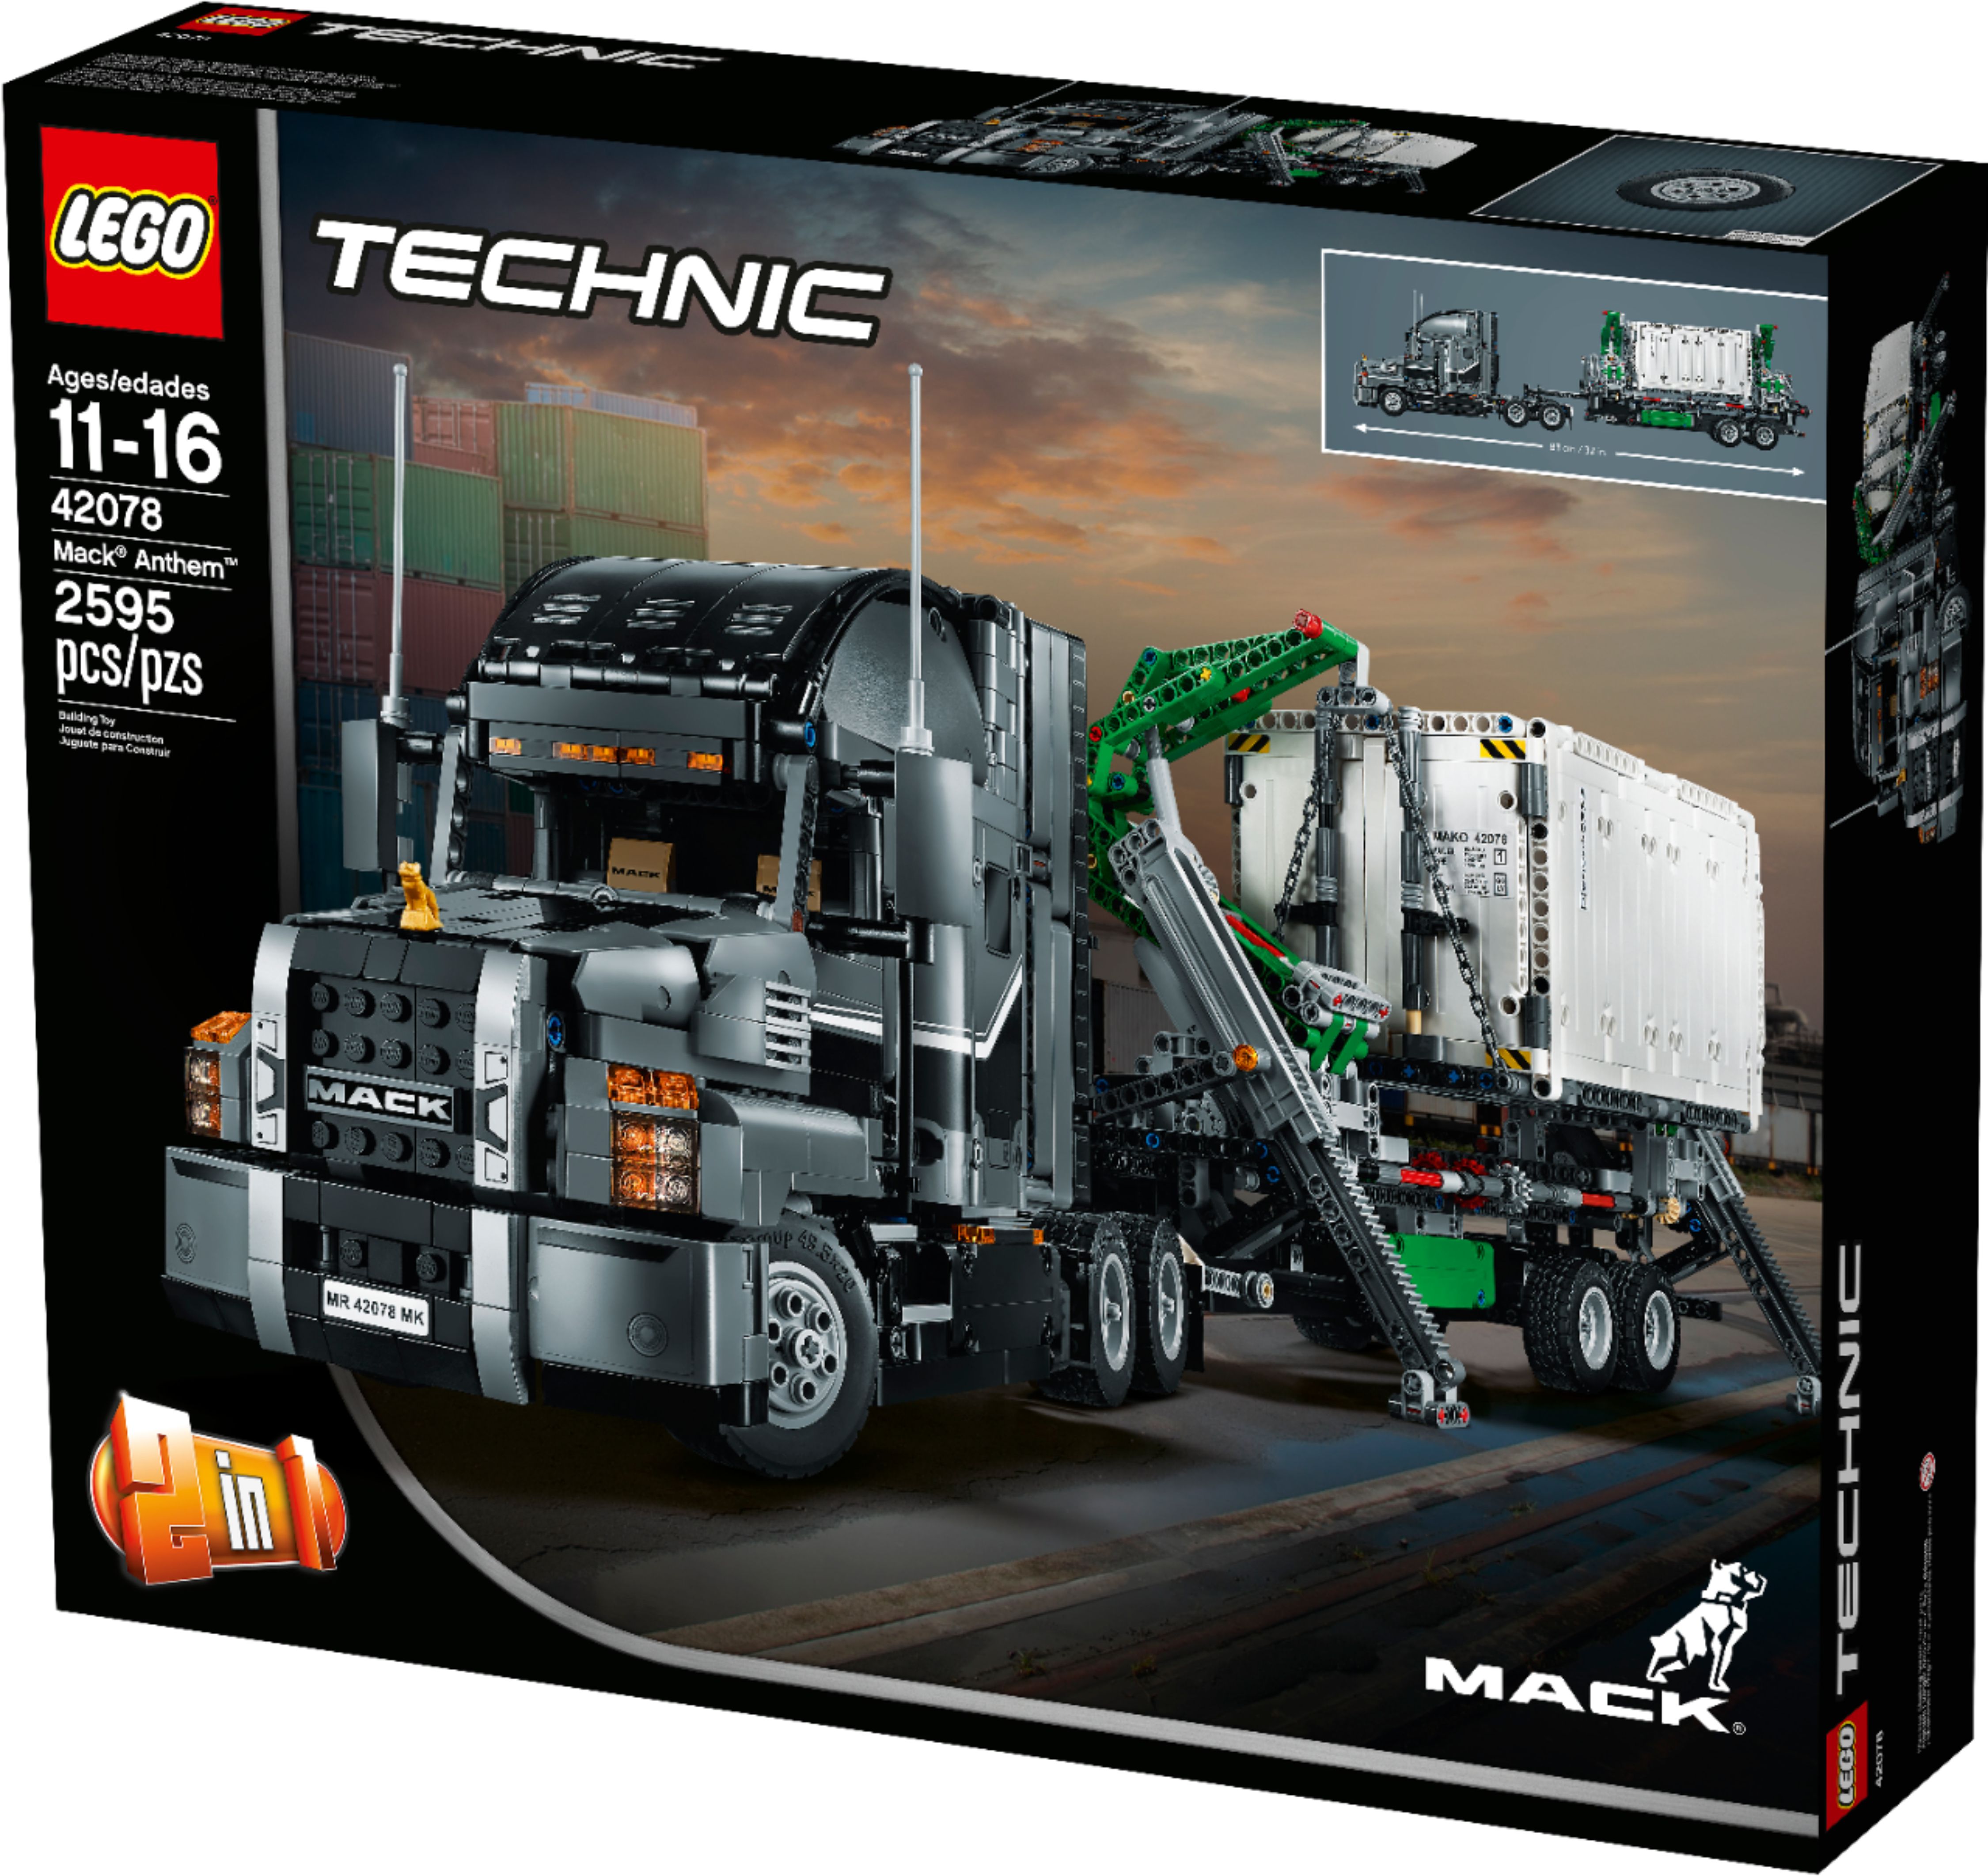 Best Buy: LEGO Technic Mack Anthem 6213707